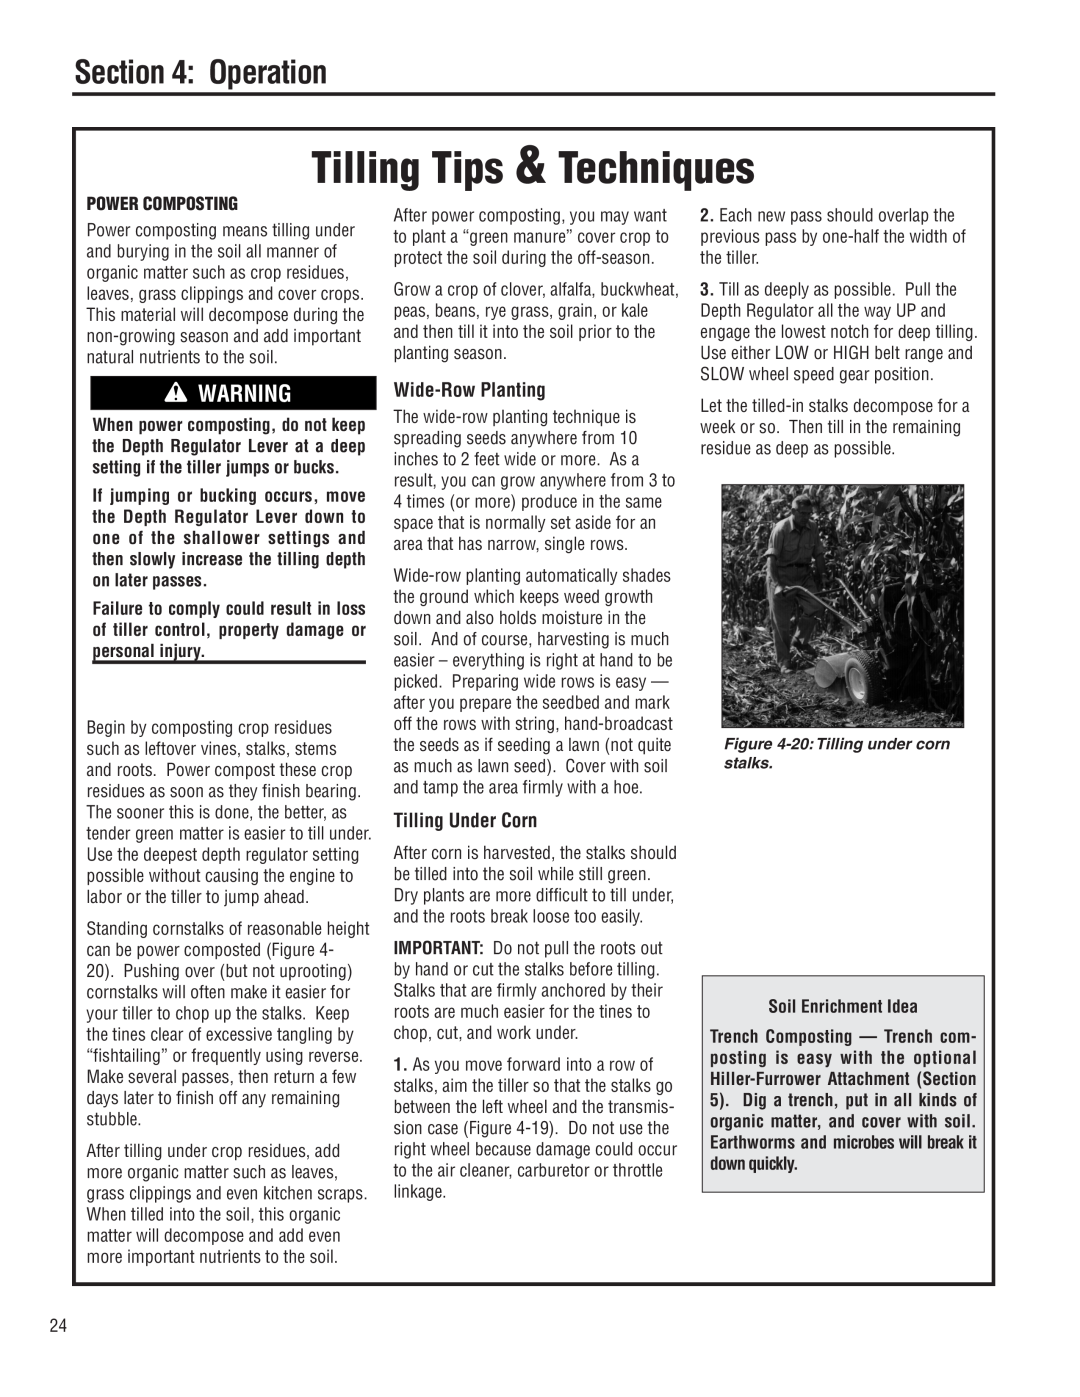 Troy-Bilt 683F Wide-Row Planting, Tilling Under Corn, Power Composting, Soil Enrichment Idea, Tilling Tips & Techniques 